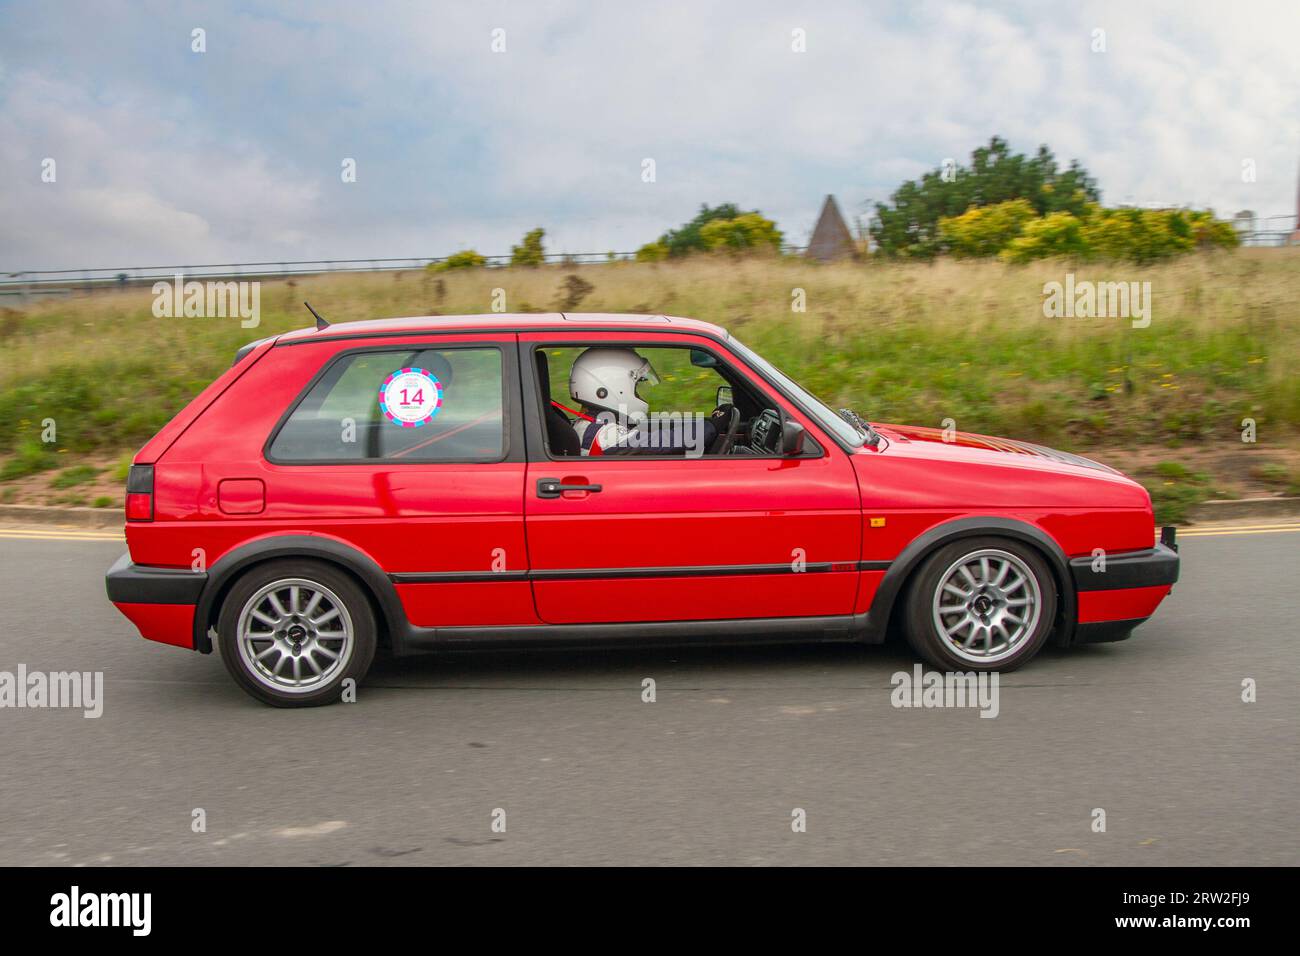 Années 1992 90 Rouge VW Volkswagen Golf GTI 16V Rouge voiture Hatchback essence 1781 cc ; Speed Revival Southport Sprint événement sur Marine Drive, classique et vitesse sur une route publique fermée parcours de sprint historique Coastal Road, Merseyside, Royaume-Uni Banque D'Images